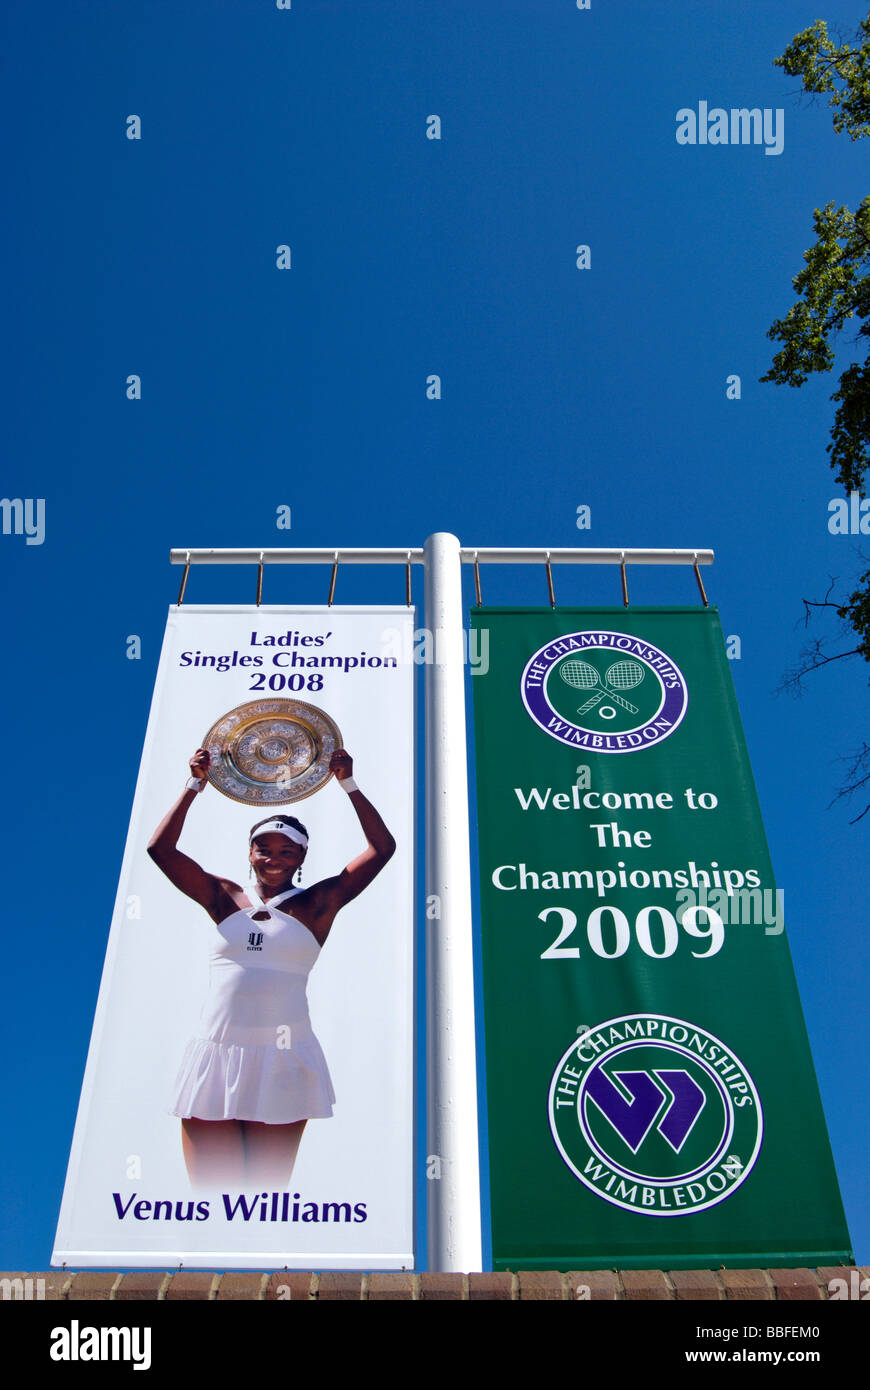 Banner für Wimbledon Tennis Championships 2009 und 2008 Damen Sieger, Venus Williams, bei der All England Lawn Tennisclub Stockfoto